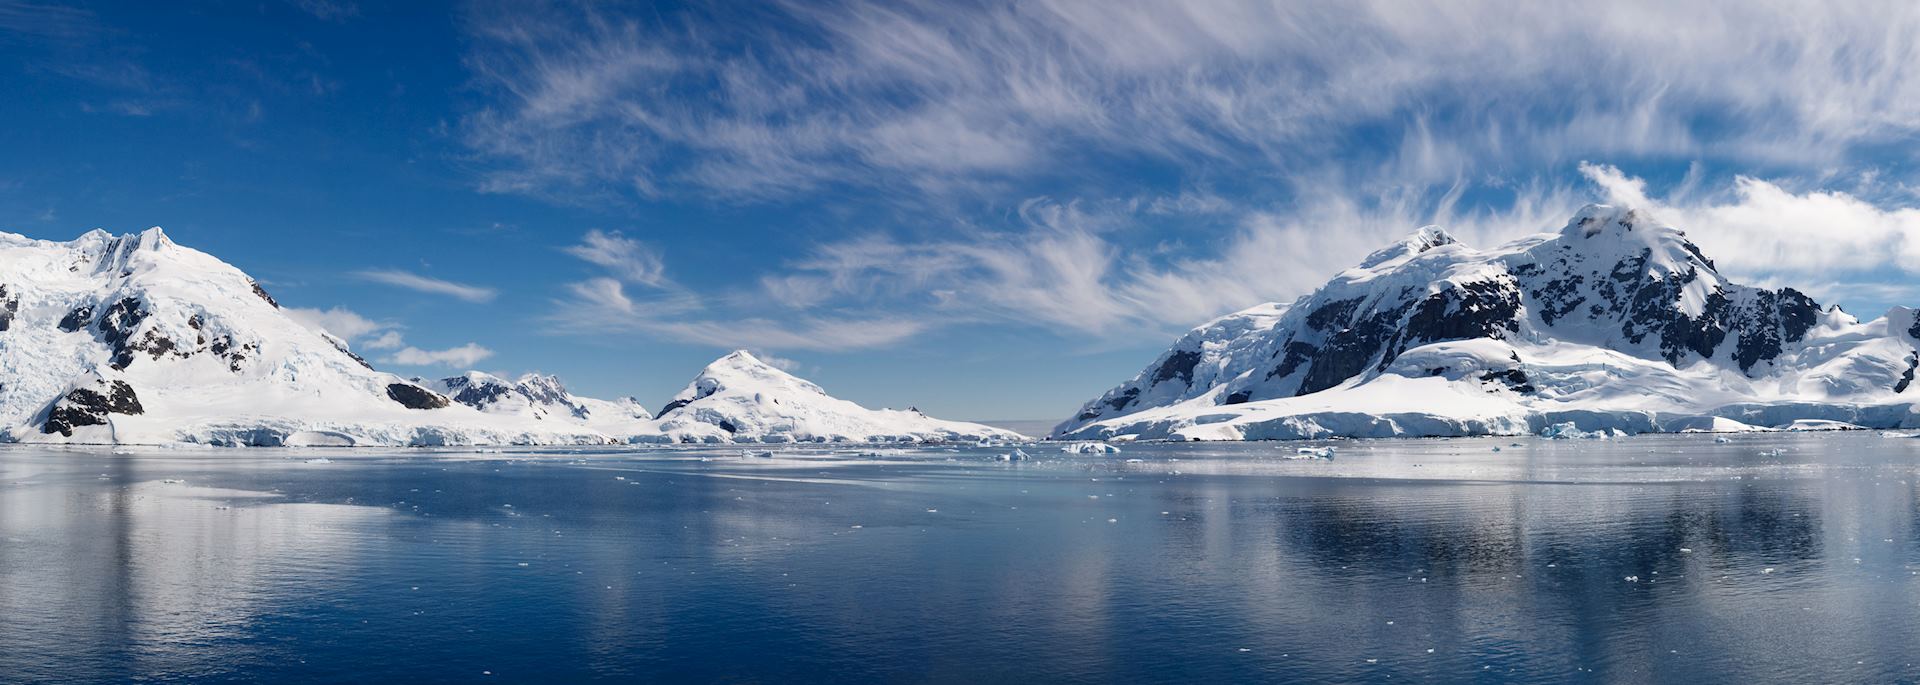 Paradise Bay, Antarctic Peninsula